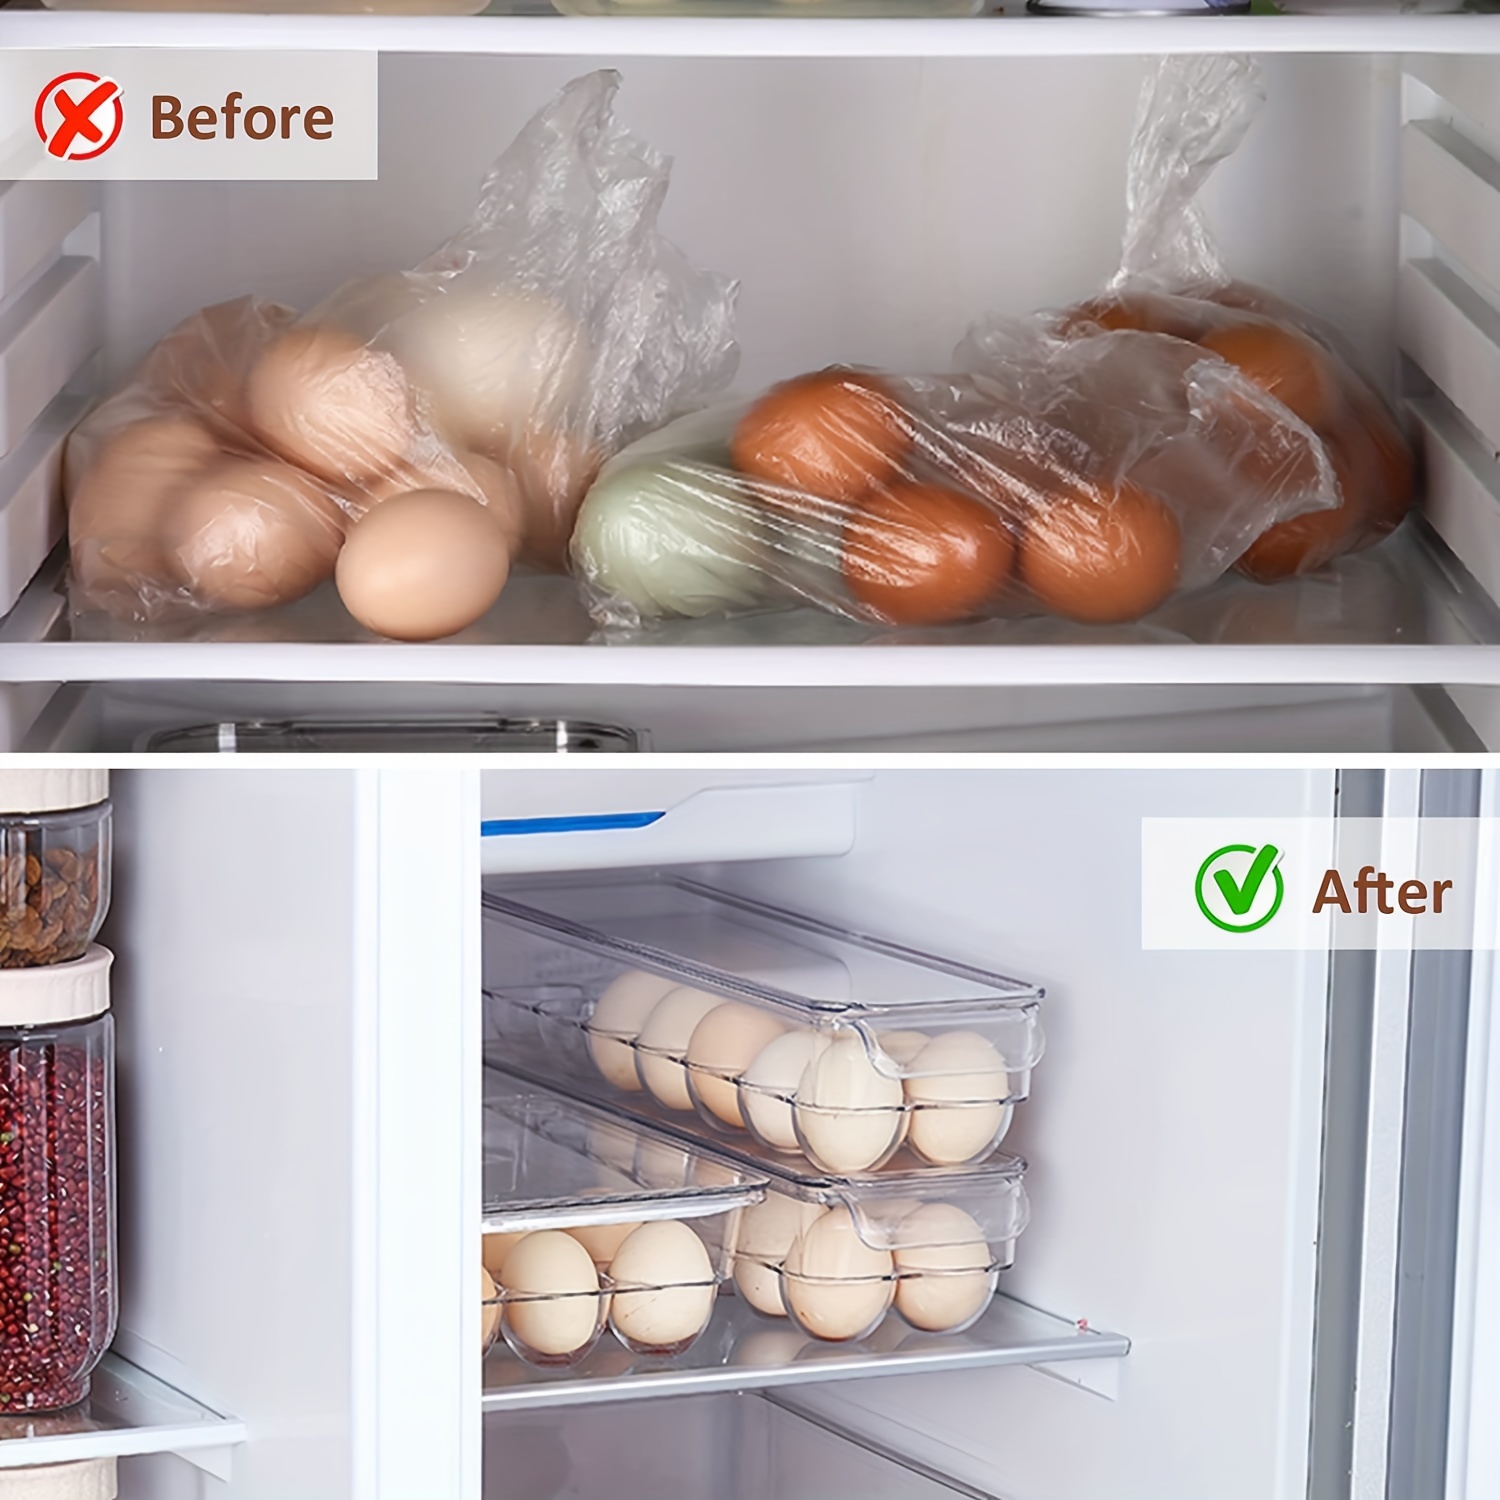 1 Pieza Soporte Huevos Refrigerador Portador Bandeja Huevos - Temu